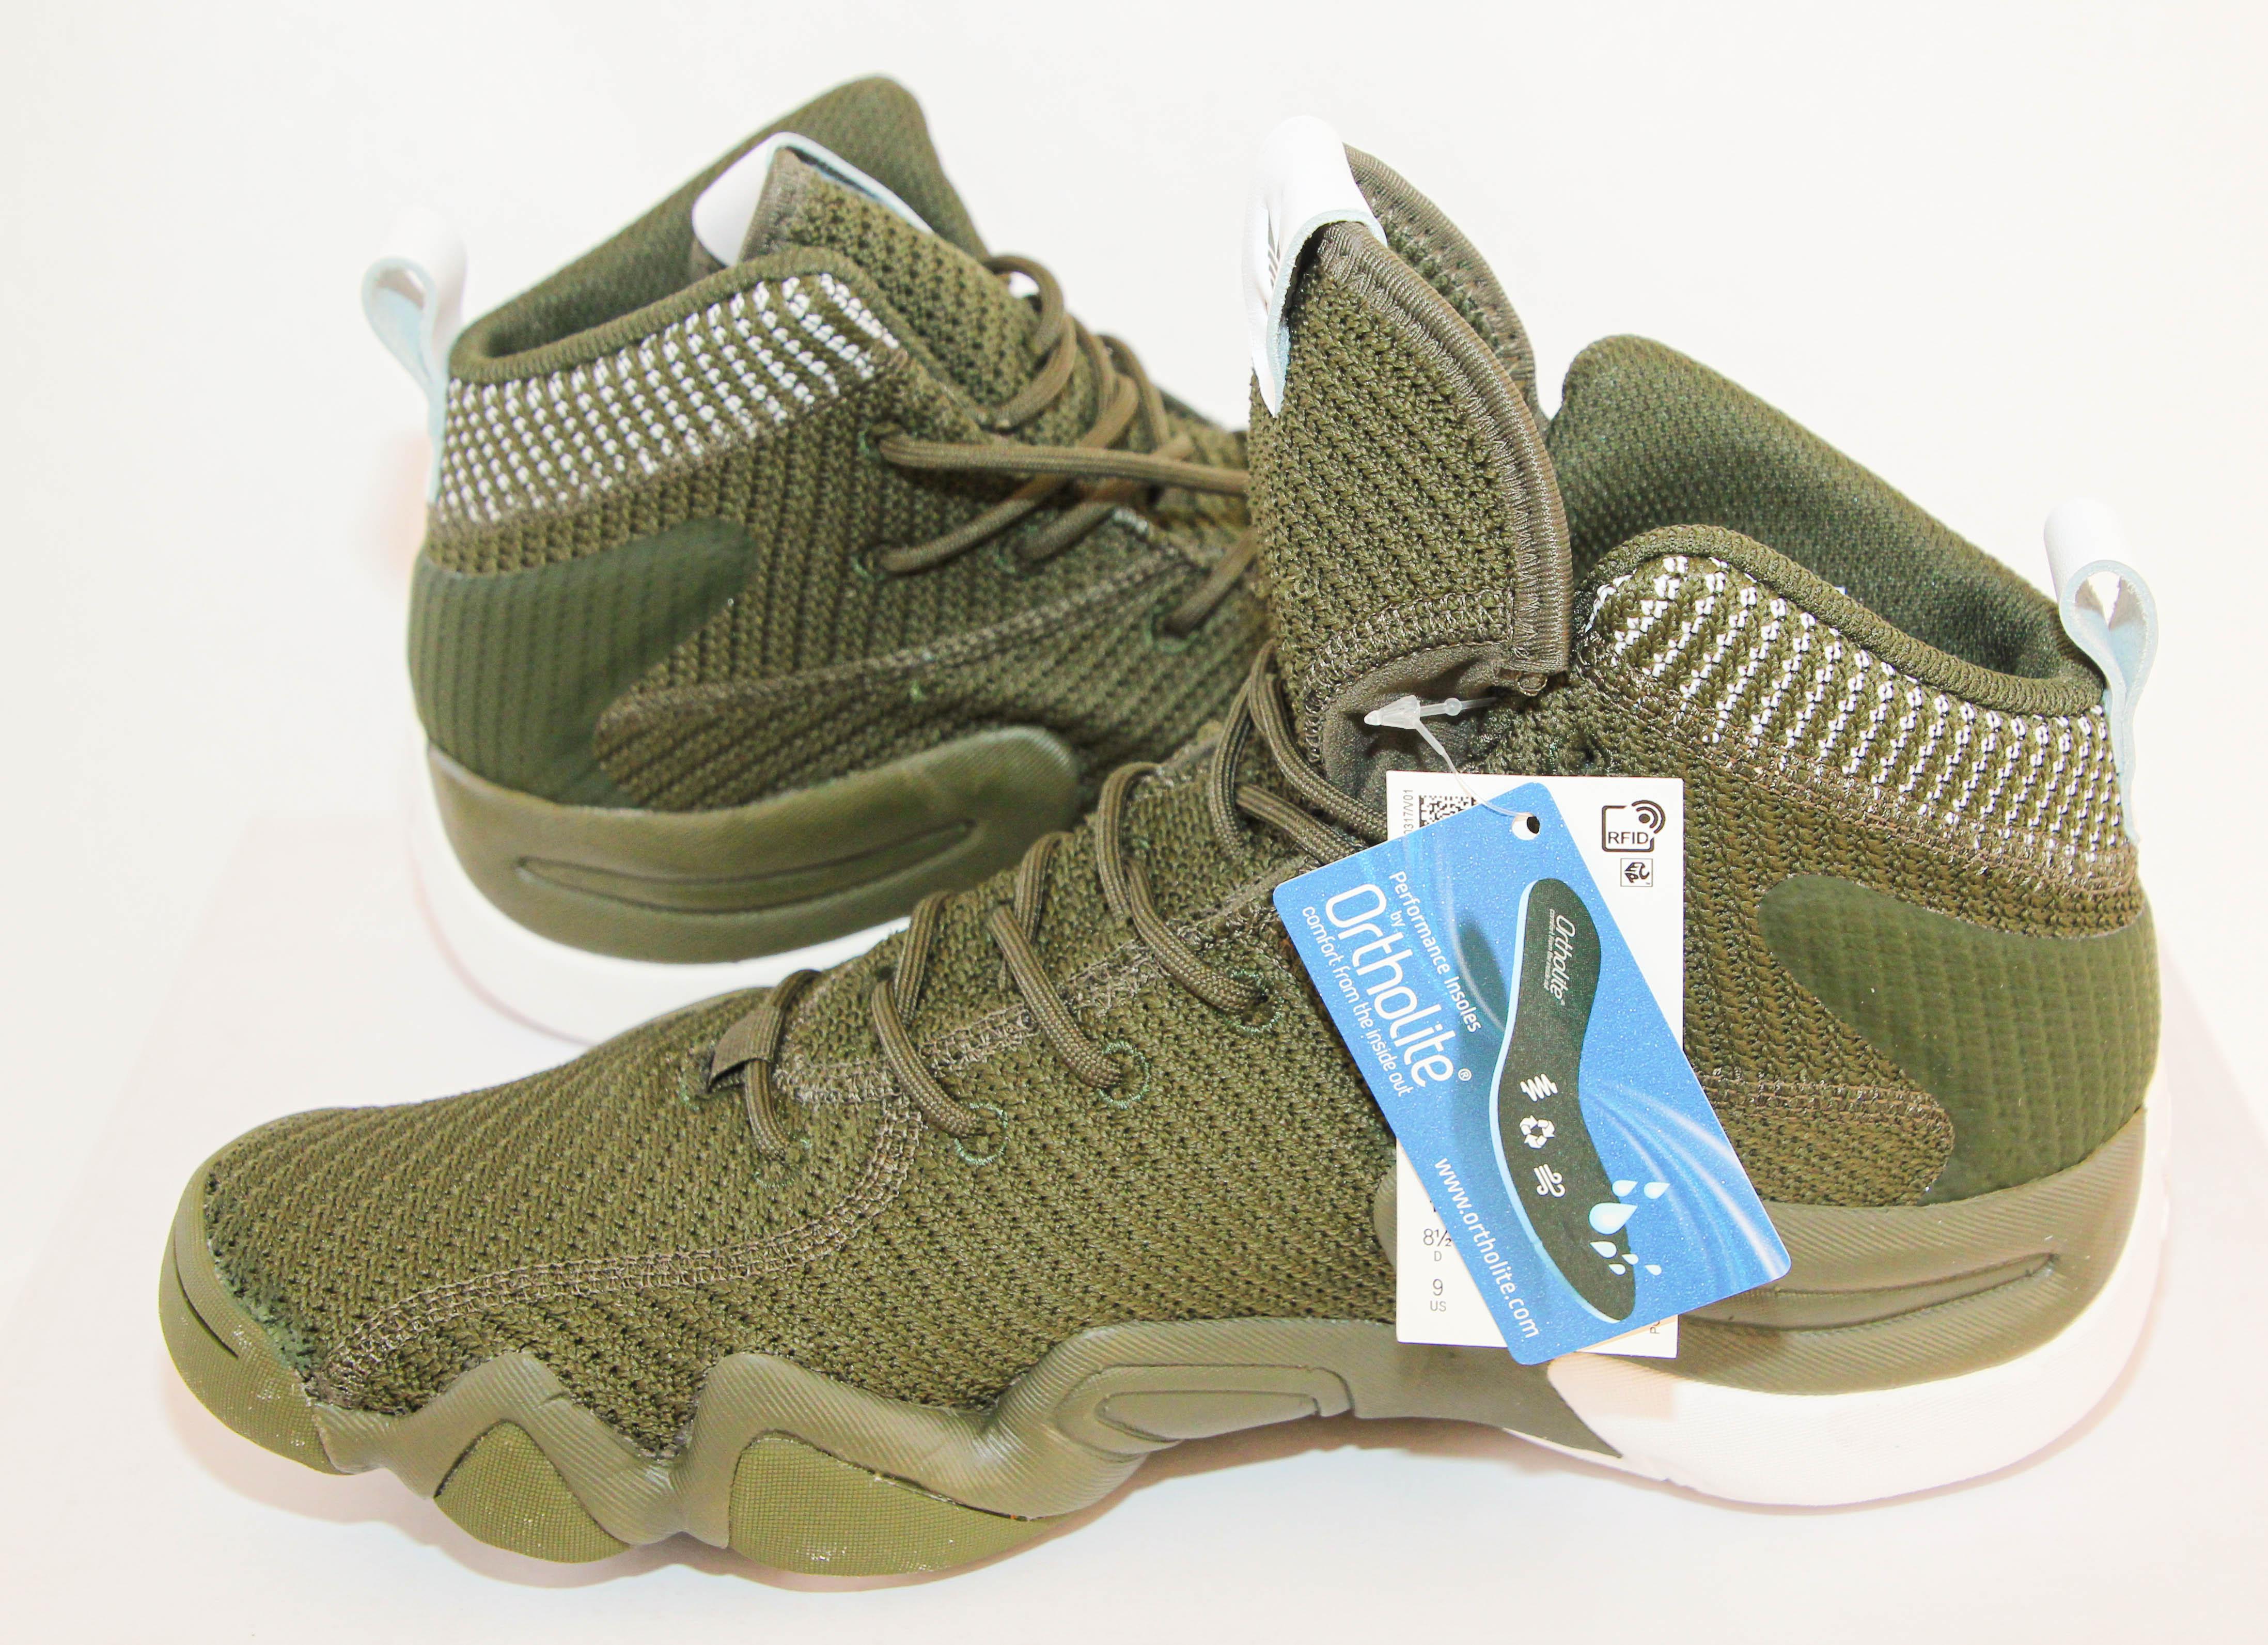 Adidas Crazy 8 Adv 1997 Basketball Shoes Size US 9 EU 42 For Sale 3